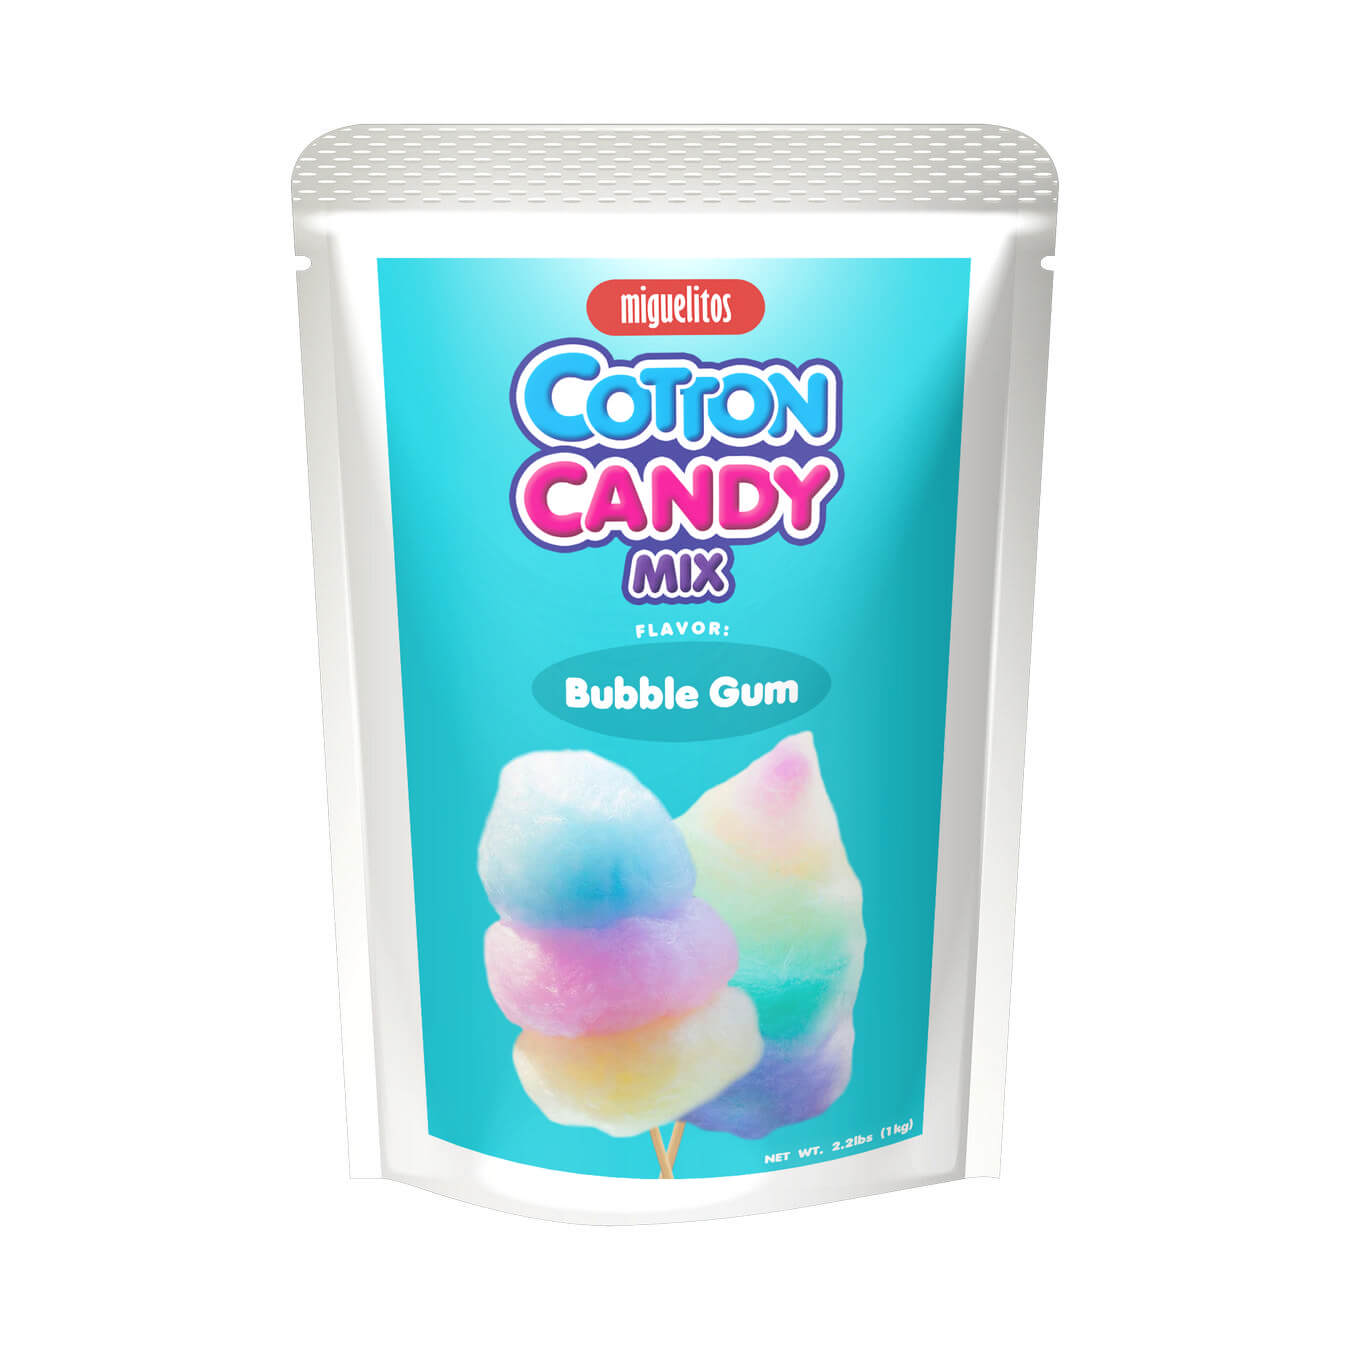 Cotton Candy Mix Bubble Gum